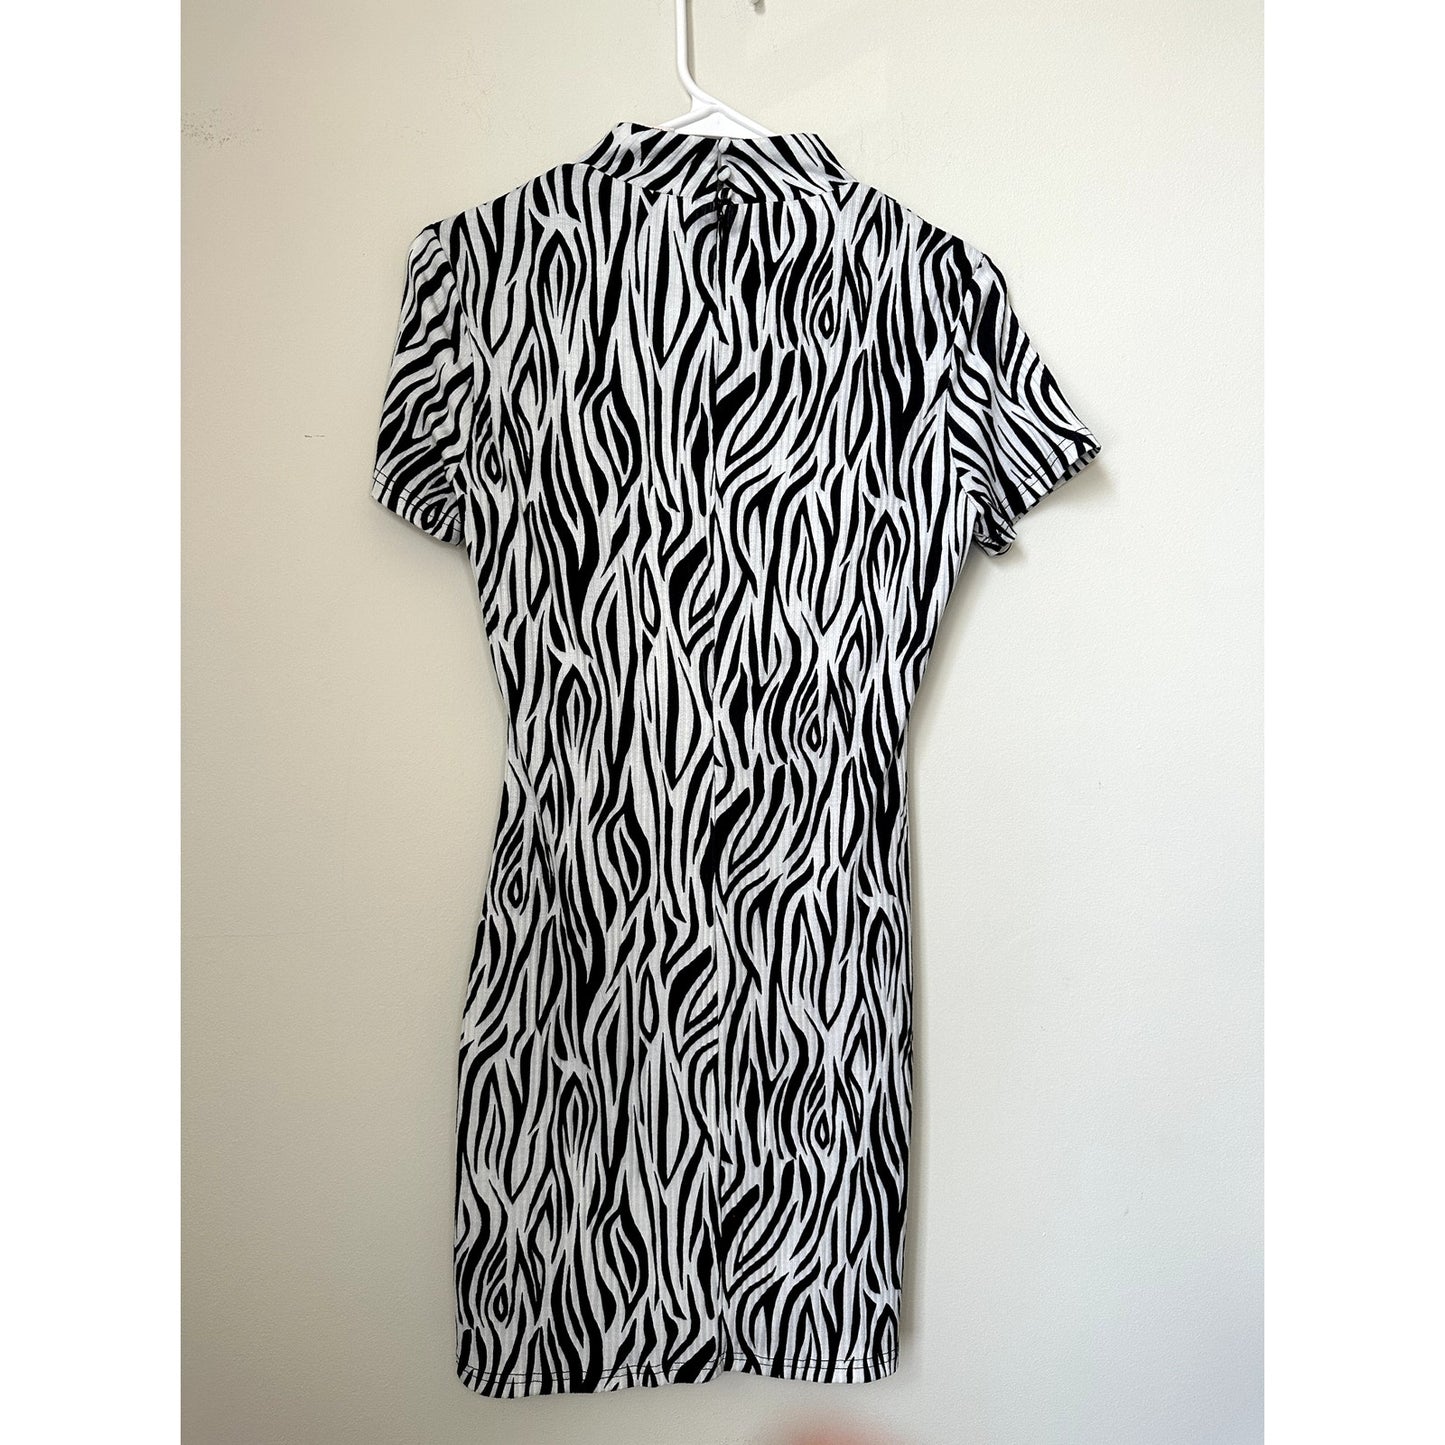 Showpo Zebra Print Mini Dress, Size 8